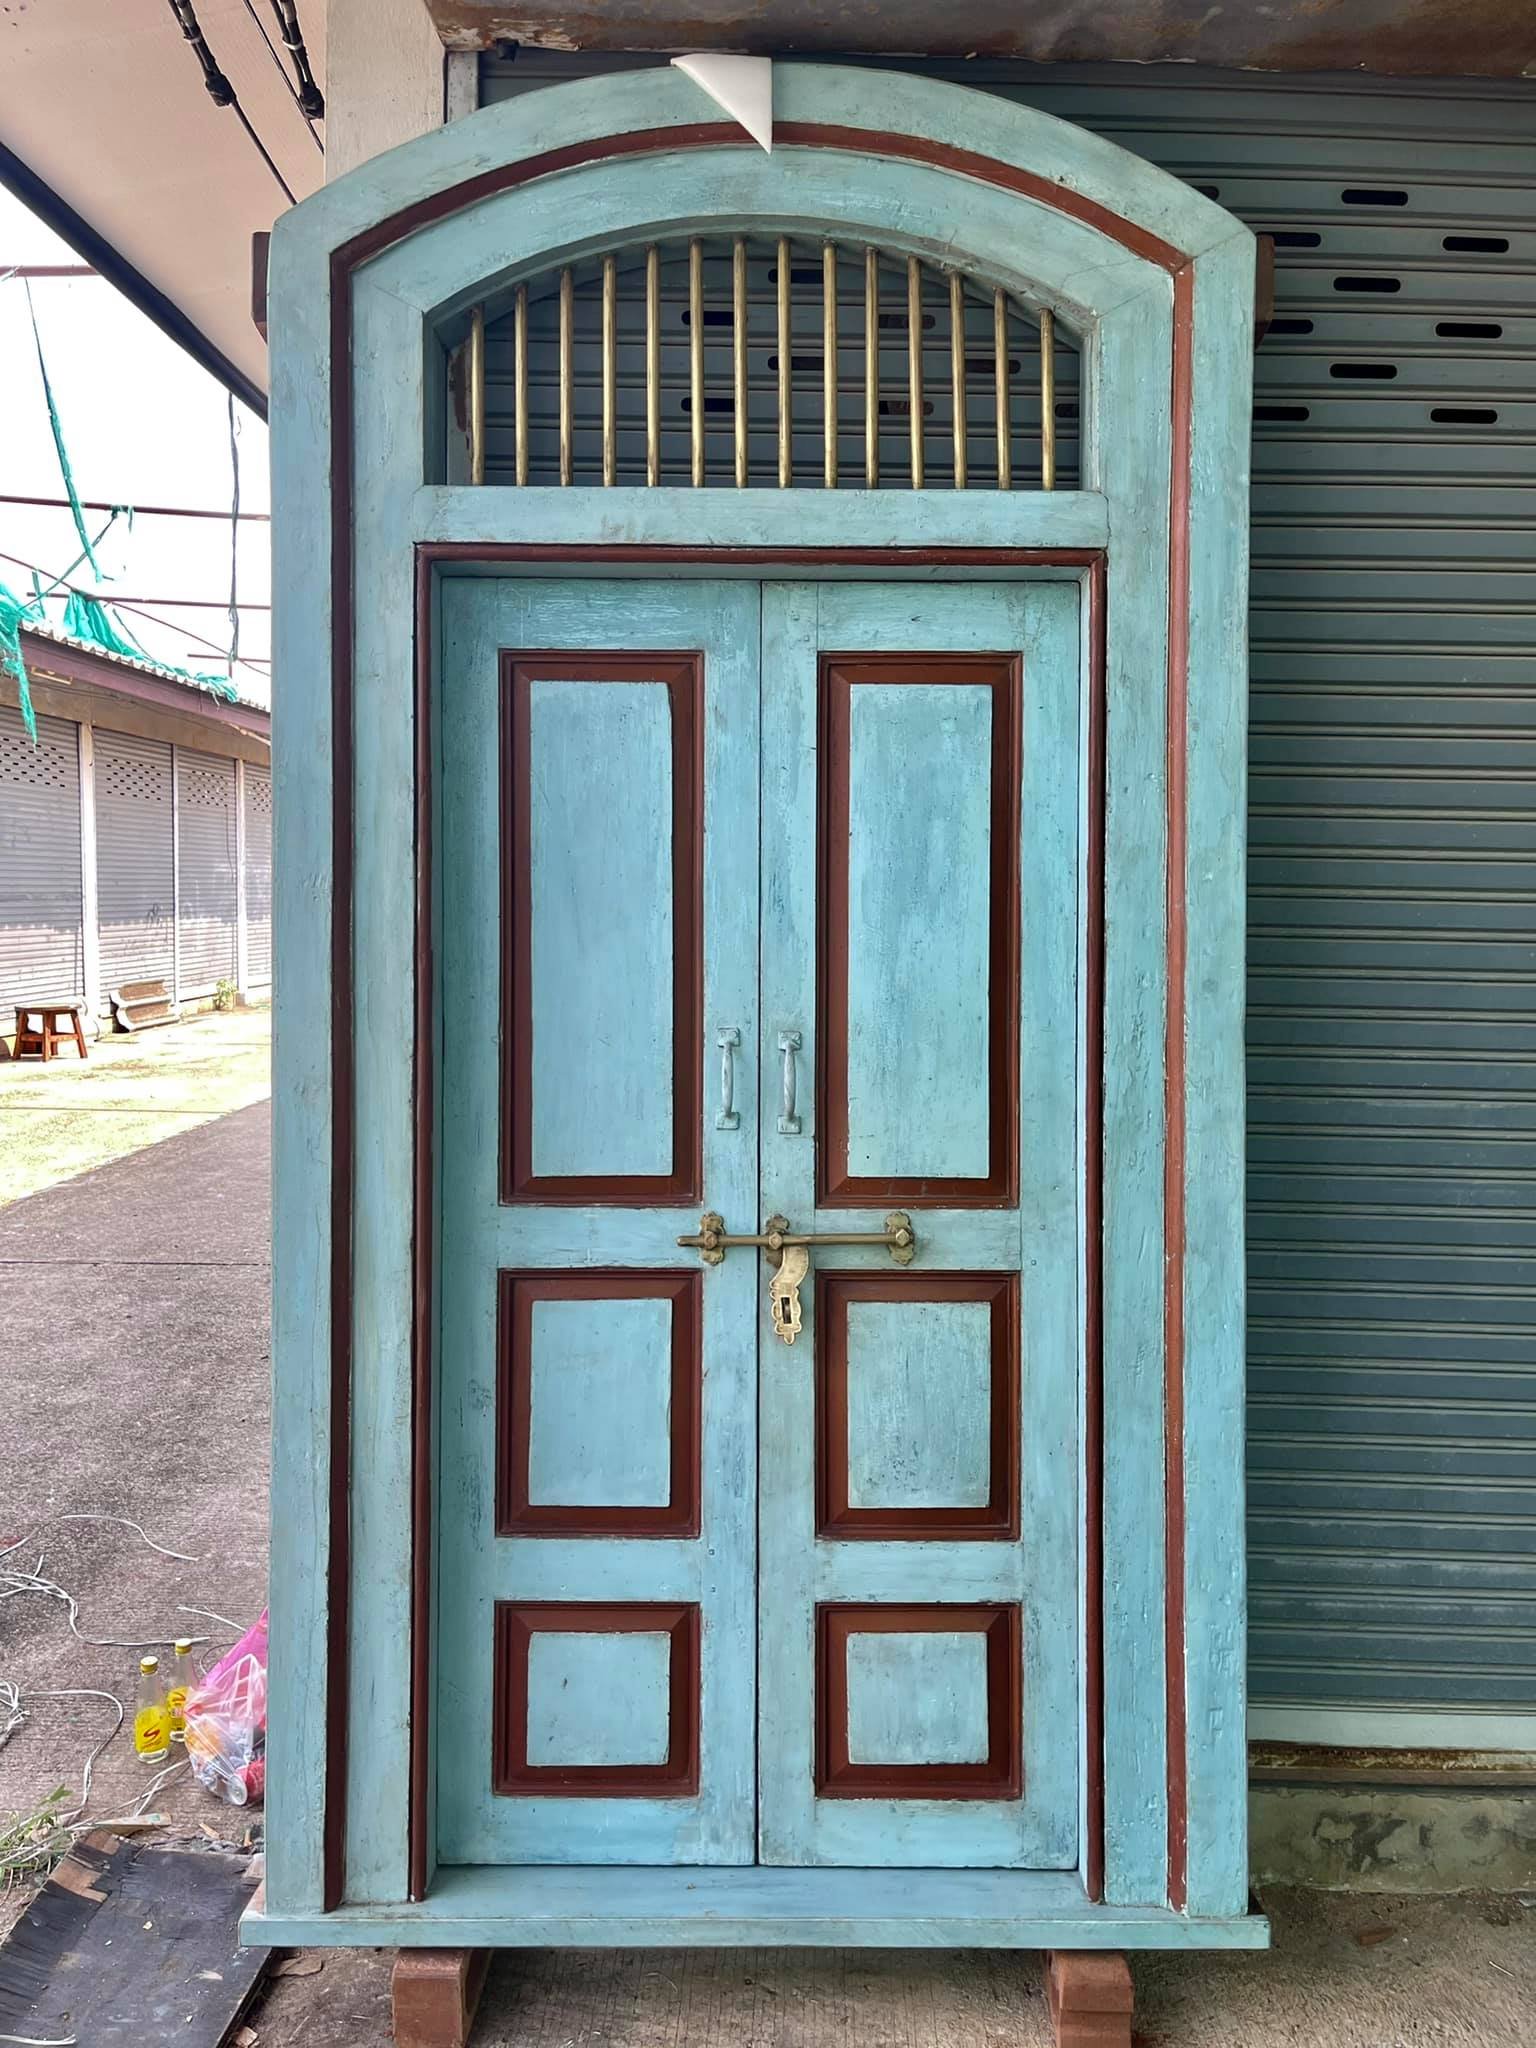 ประตูไม้สักสไตล์อังกฤษสีฟ้าสว่างตัดเส้นสีน้ำตาล